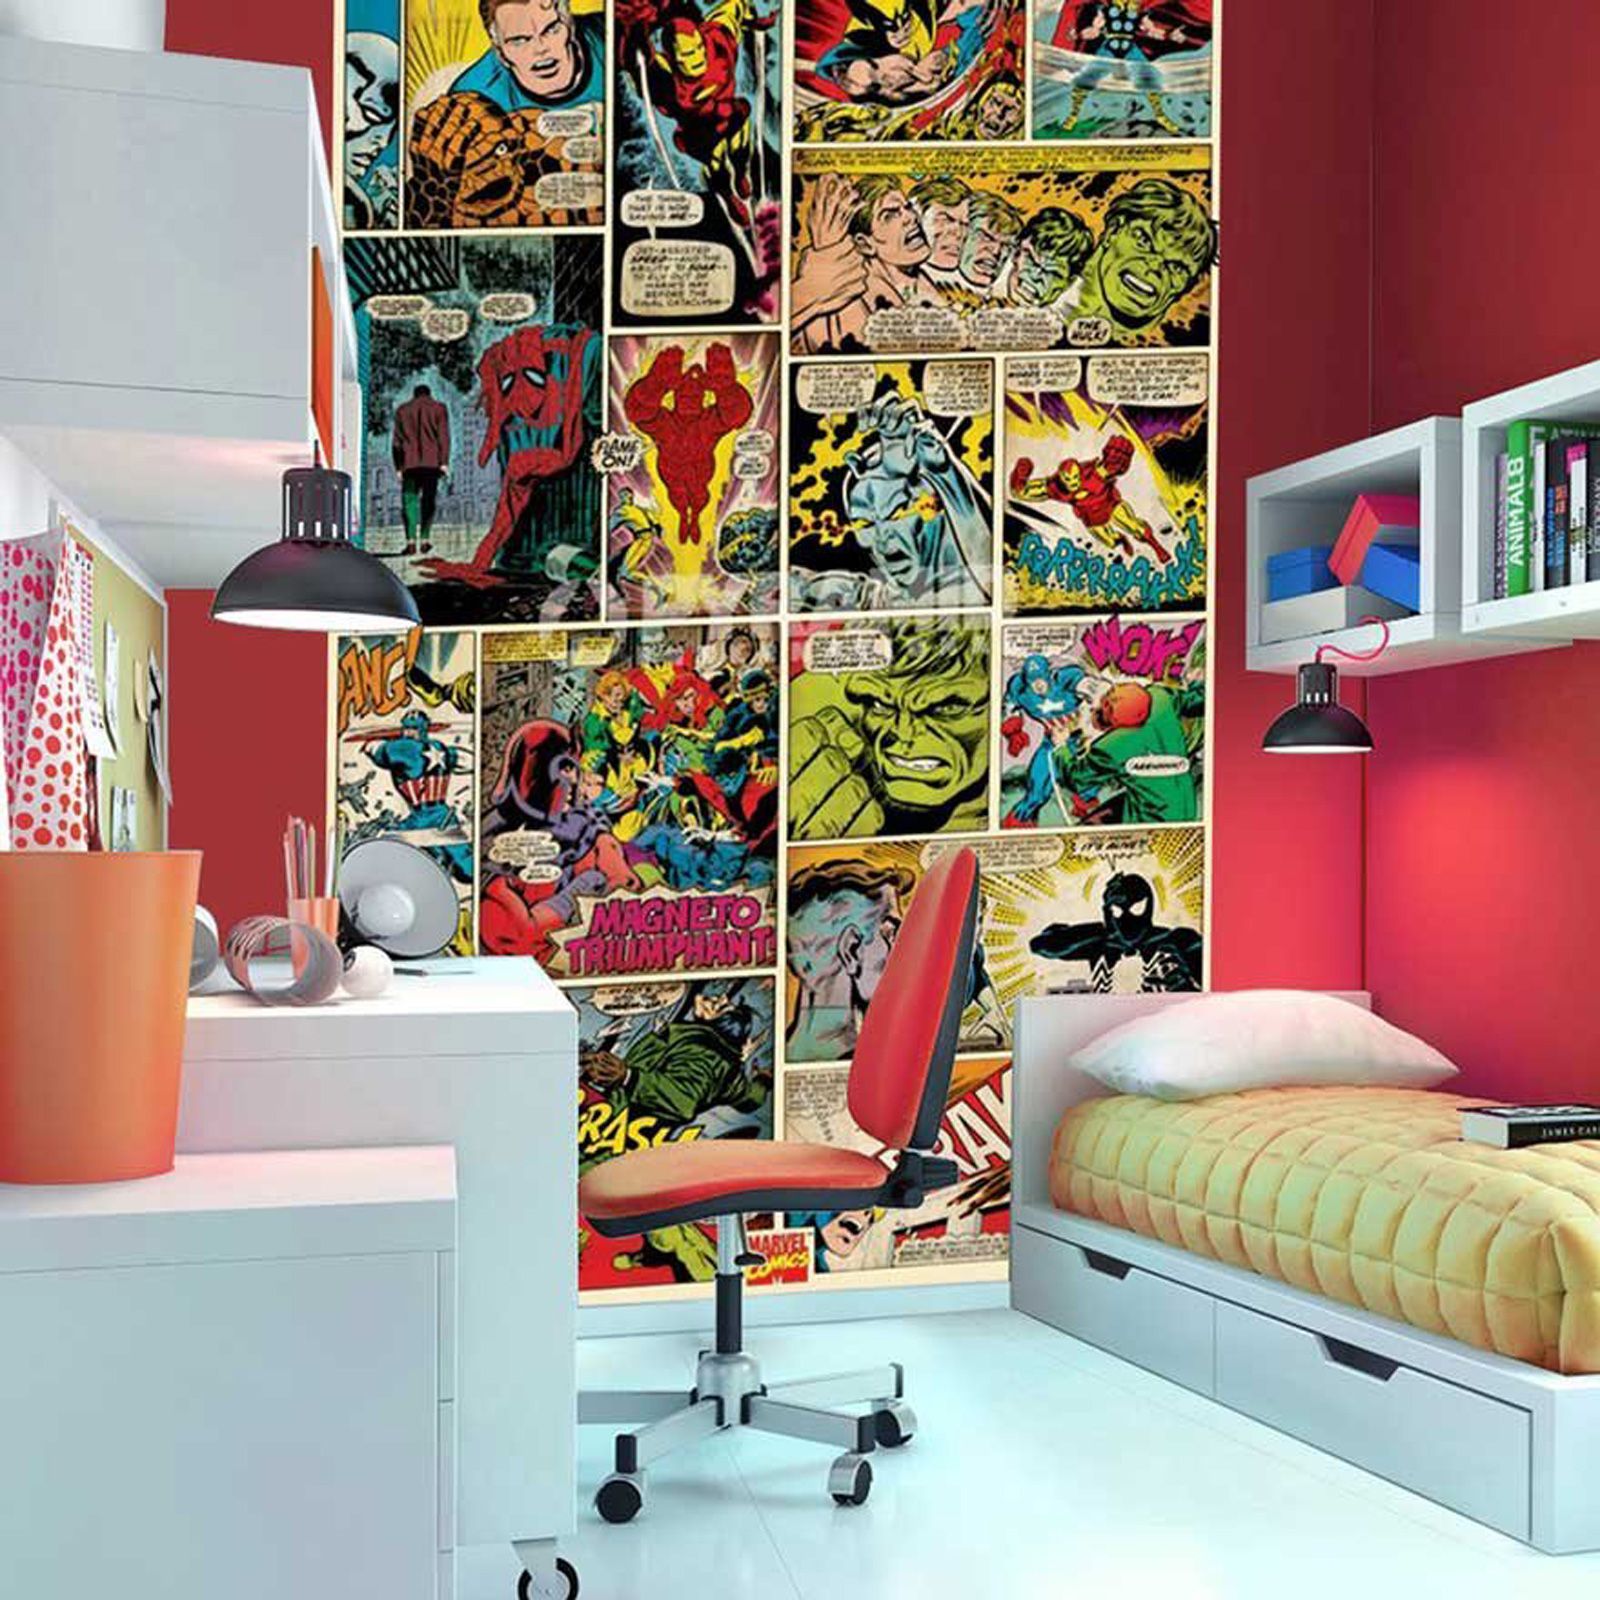 bordure de papier peint de super héros,chambre,design d'intérieur,mur,salon,meubles